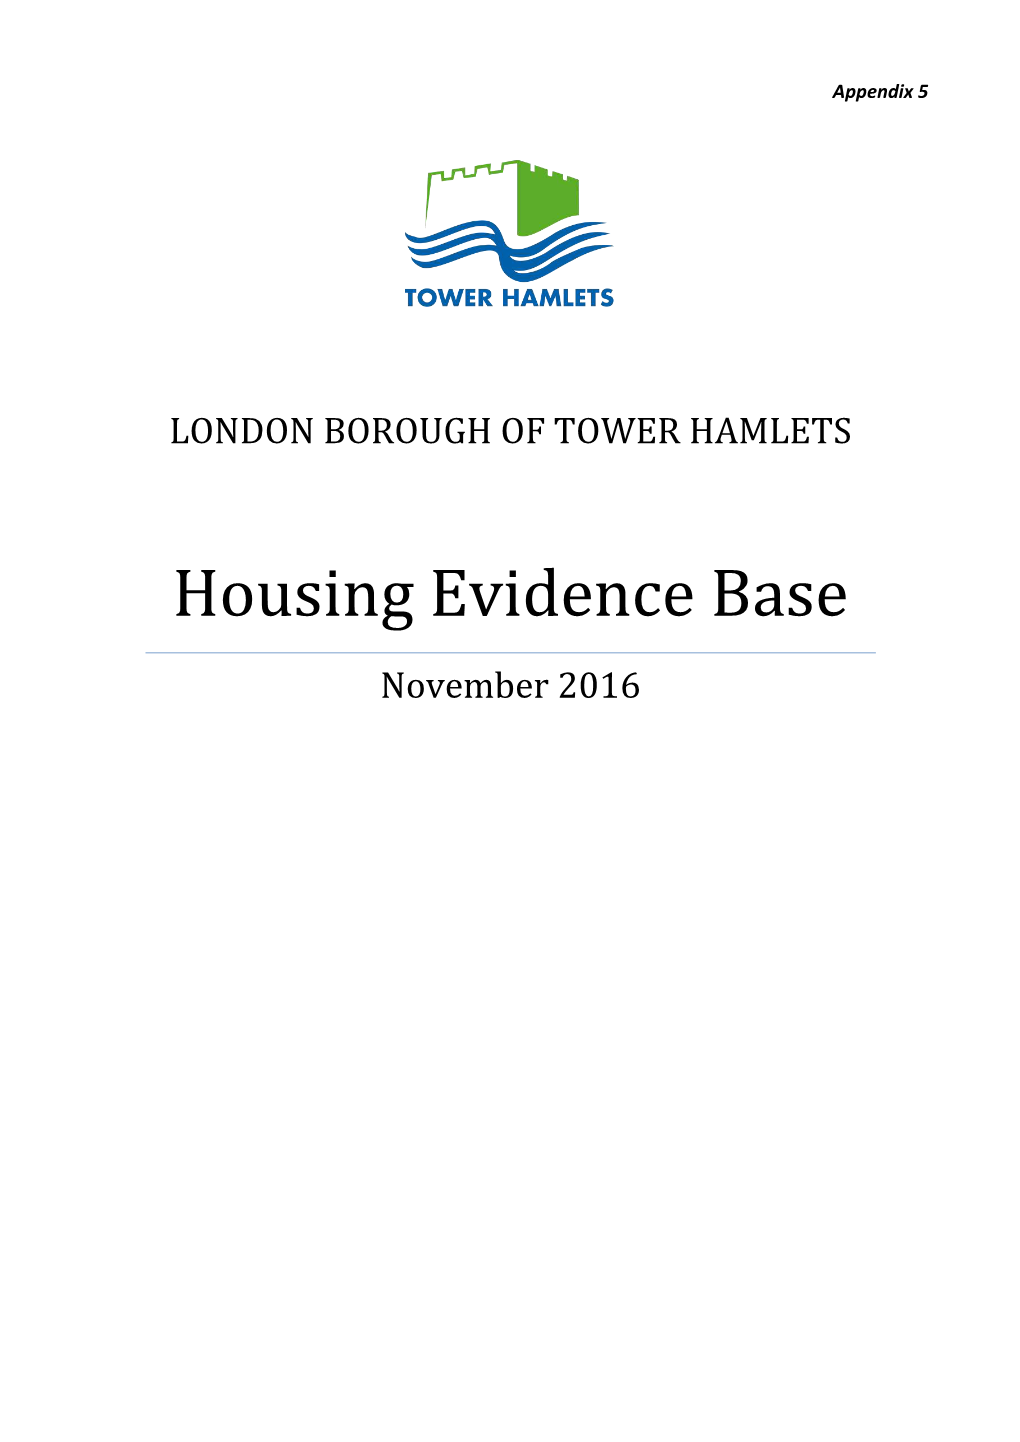 Housing Evidence Base November 2016